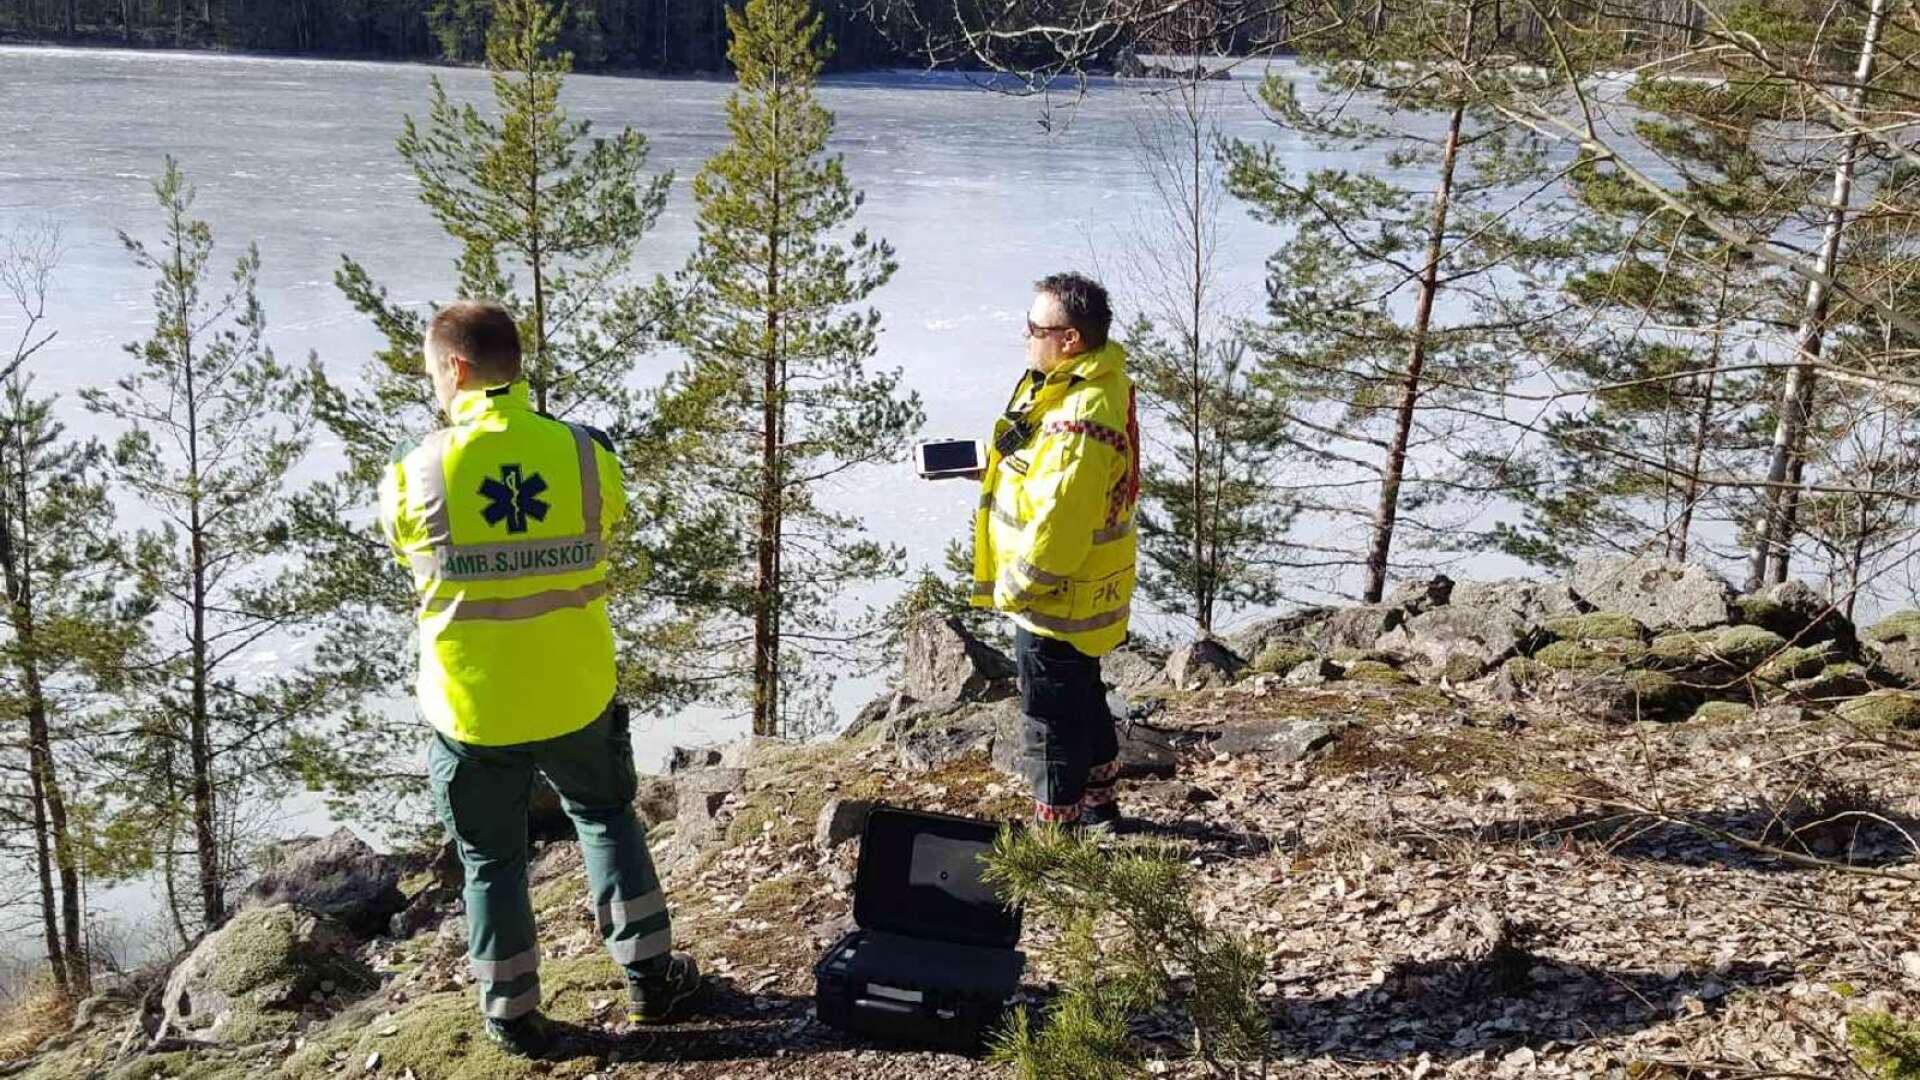 Insatsledaren Peter Karlsson (till höger) blickar ut över Abborrtjärns is tillsammans med personal från ambulansen.